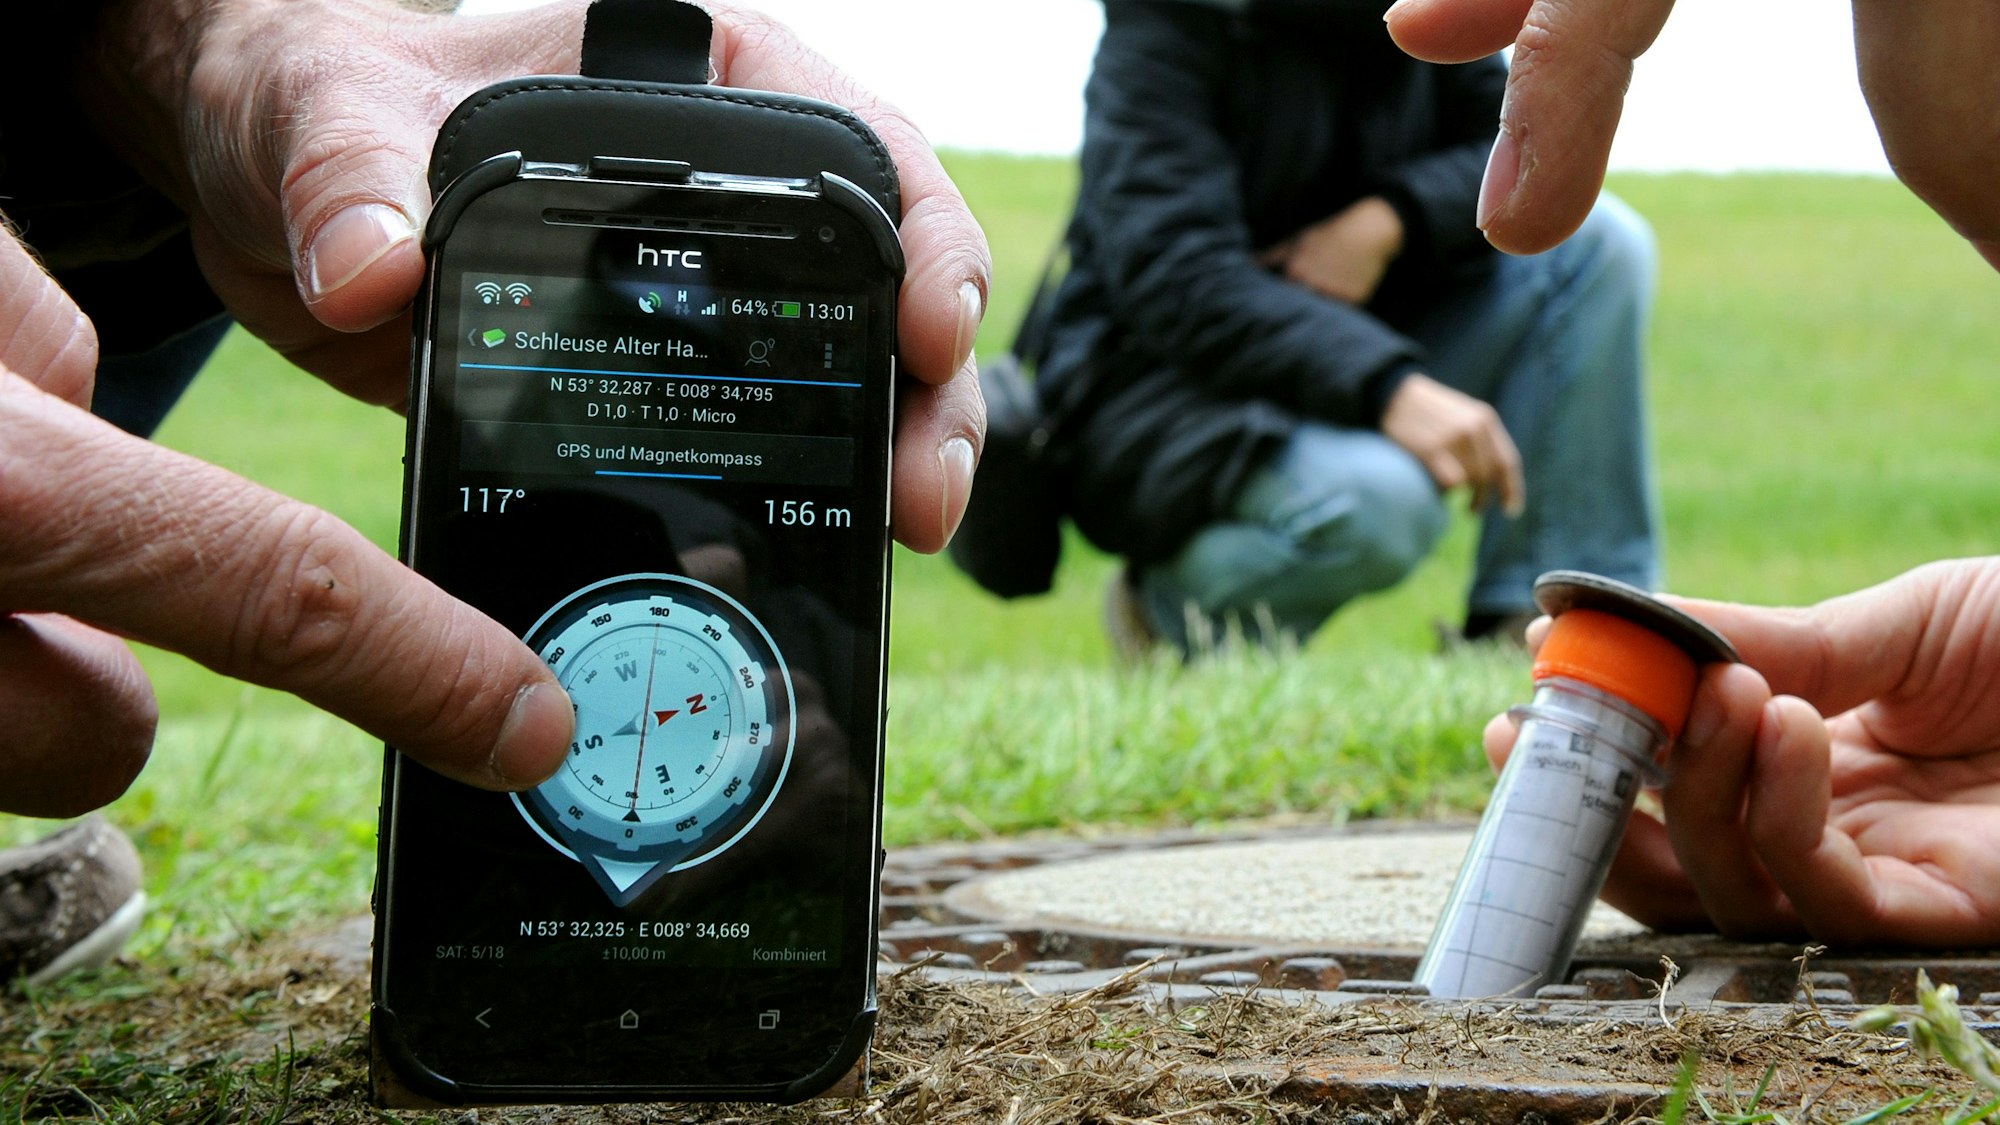 Auf einem Handy ist ein digitaler Kompass zu sehen, der GPS-Koordinaten anzeigt. Daneben nimmt eine Person ein Röhrchen mit einem Geo-Cache aus dem Boden.